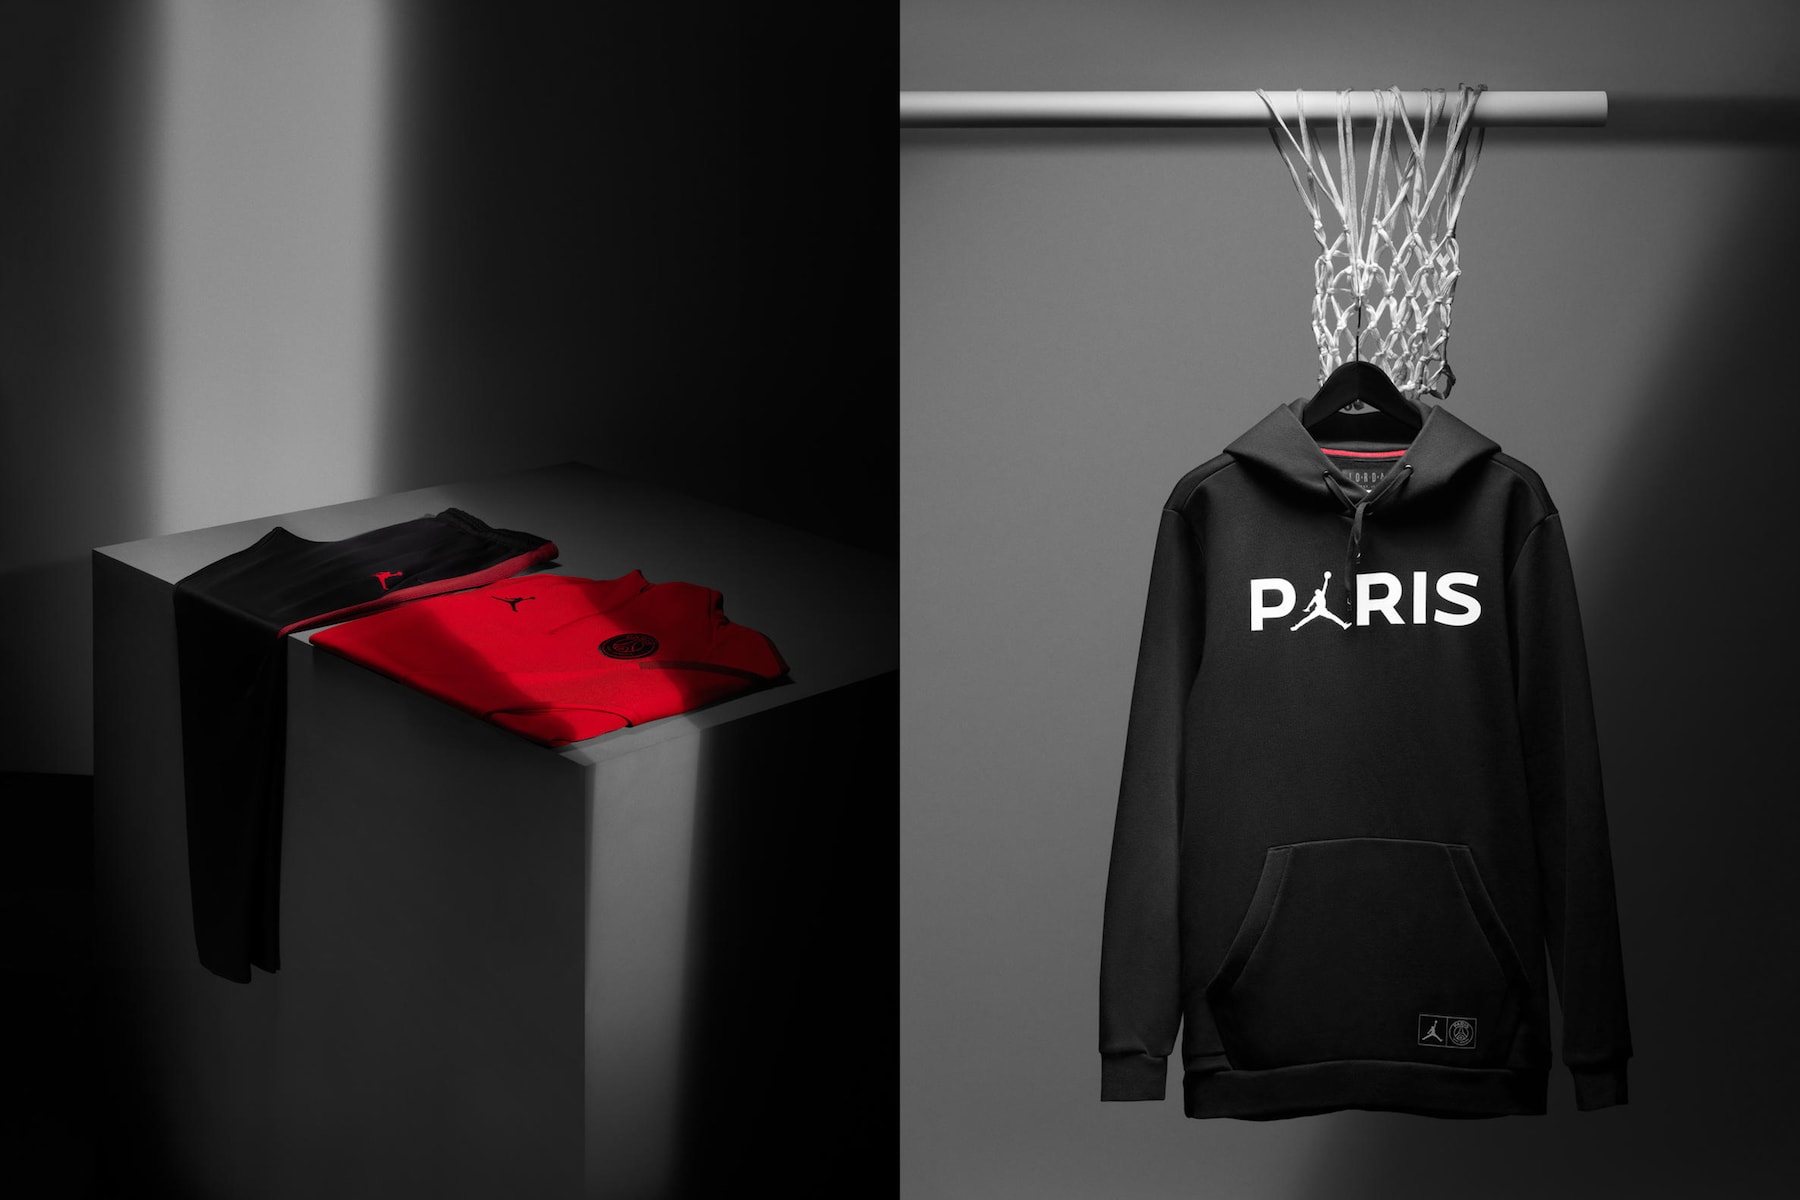 Jordan Brand x Paris Saint-Germain 聯乘系列即將上架